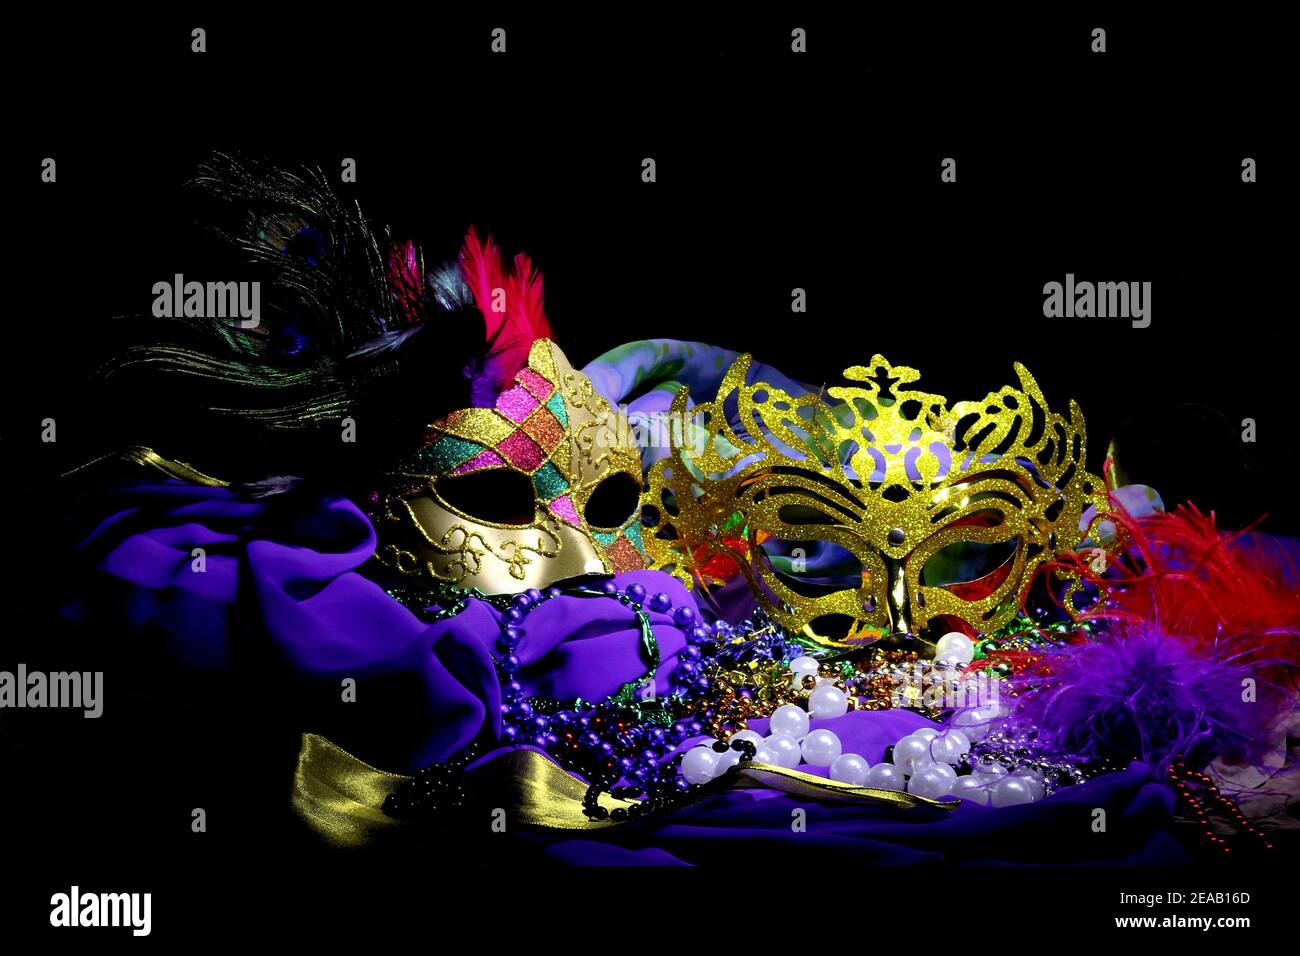 Zwei verzierte Goldmasken mit Federn und Satinstoff sitzen in einem farbenfrohen Stillleben-Arrangement. Stockfoto